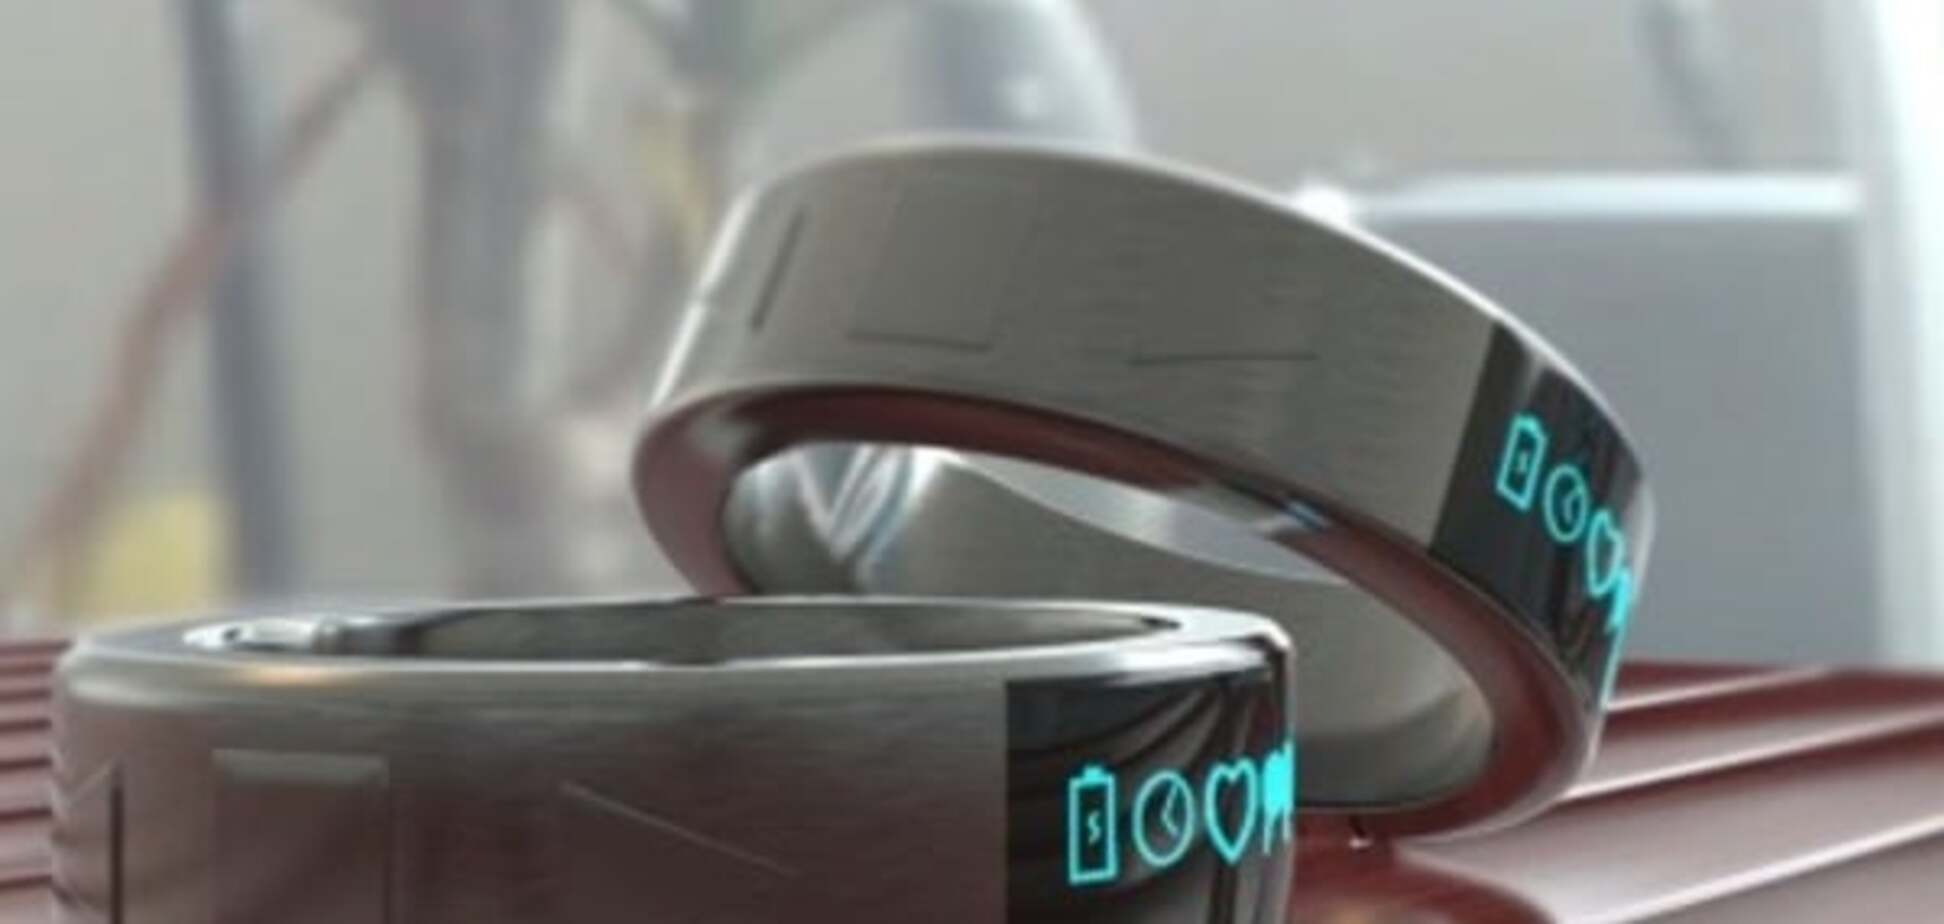 Samsung изобретет умное кольцо для управления гаджетами